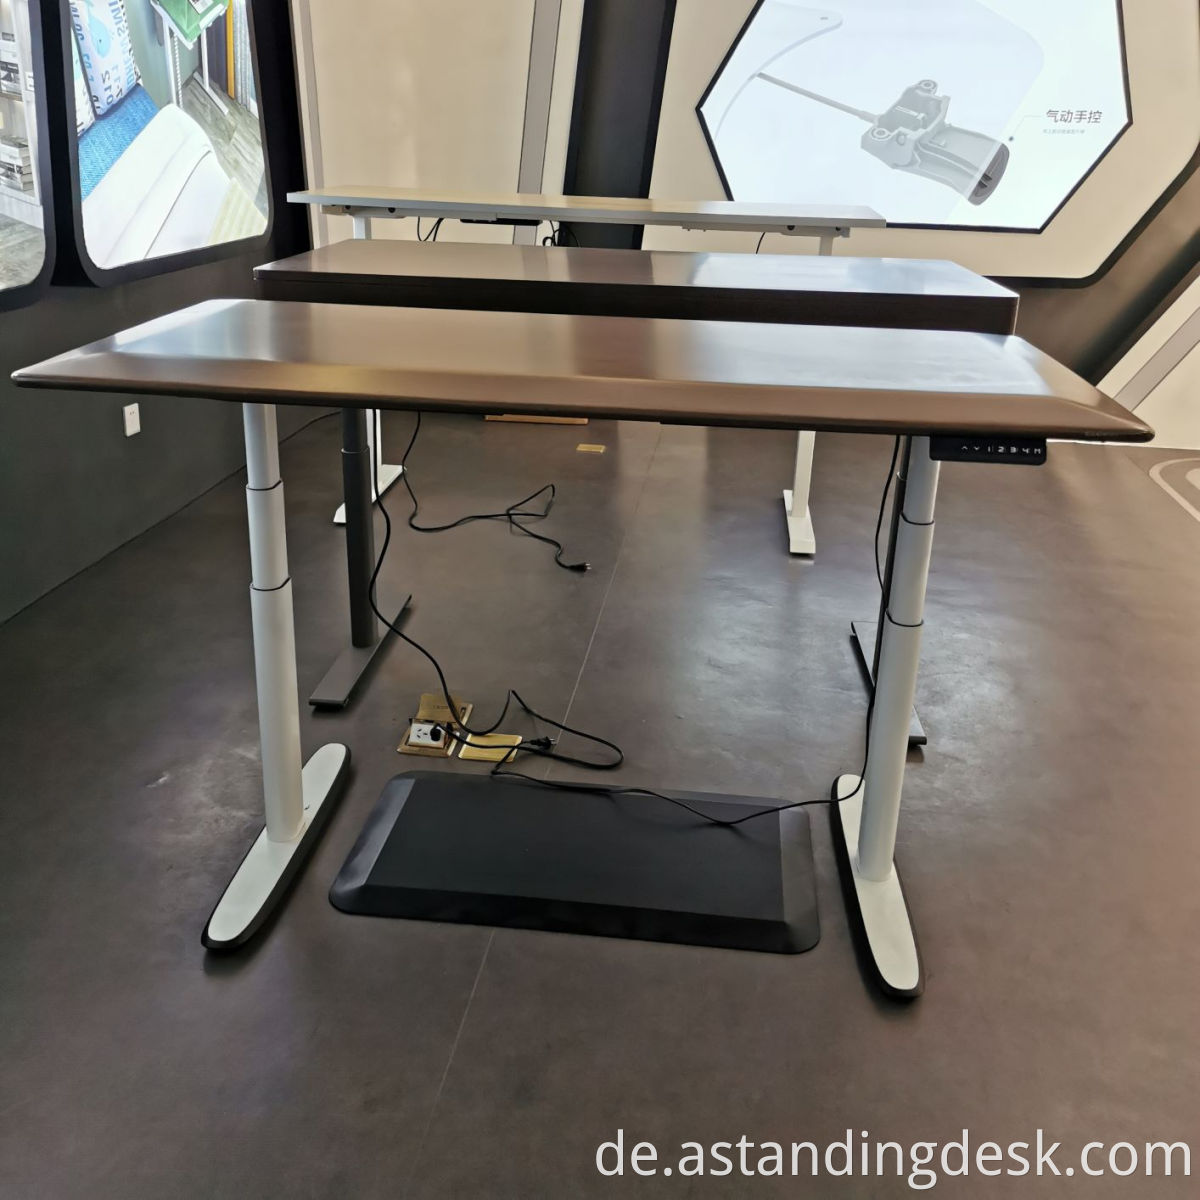 2022 Beliebte Büromöbel 2 Beine Drei Stufen Dual Motorhöhe Einstellbarer Computer Elektrischer Schreibtisch